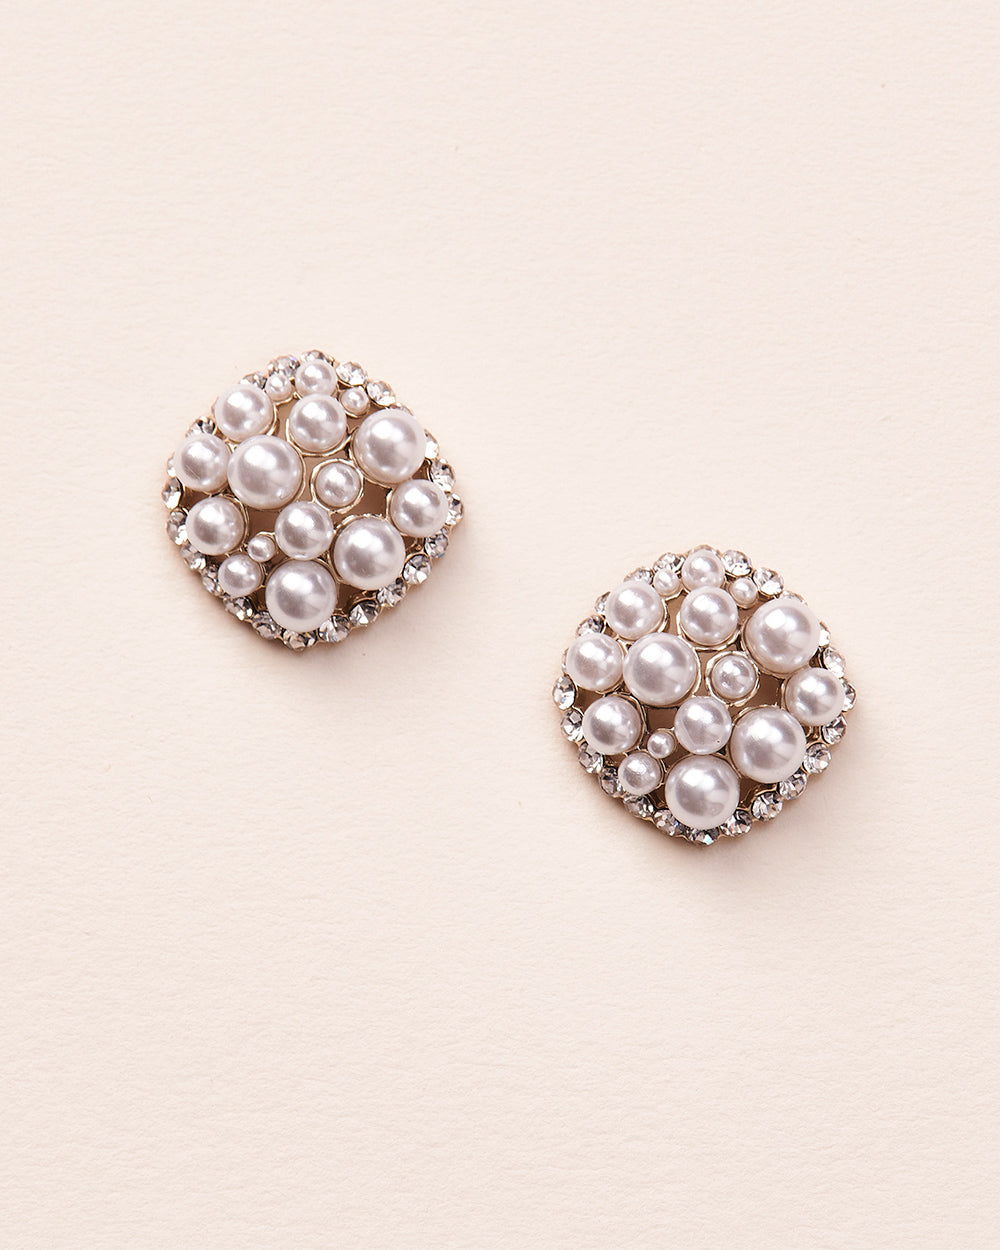 Pearl & Crystal Cluster Stud Earrings for Bride